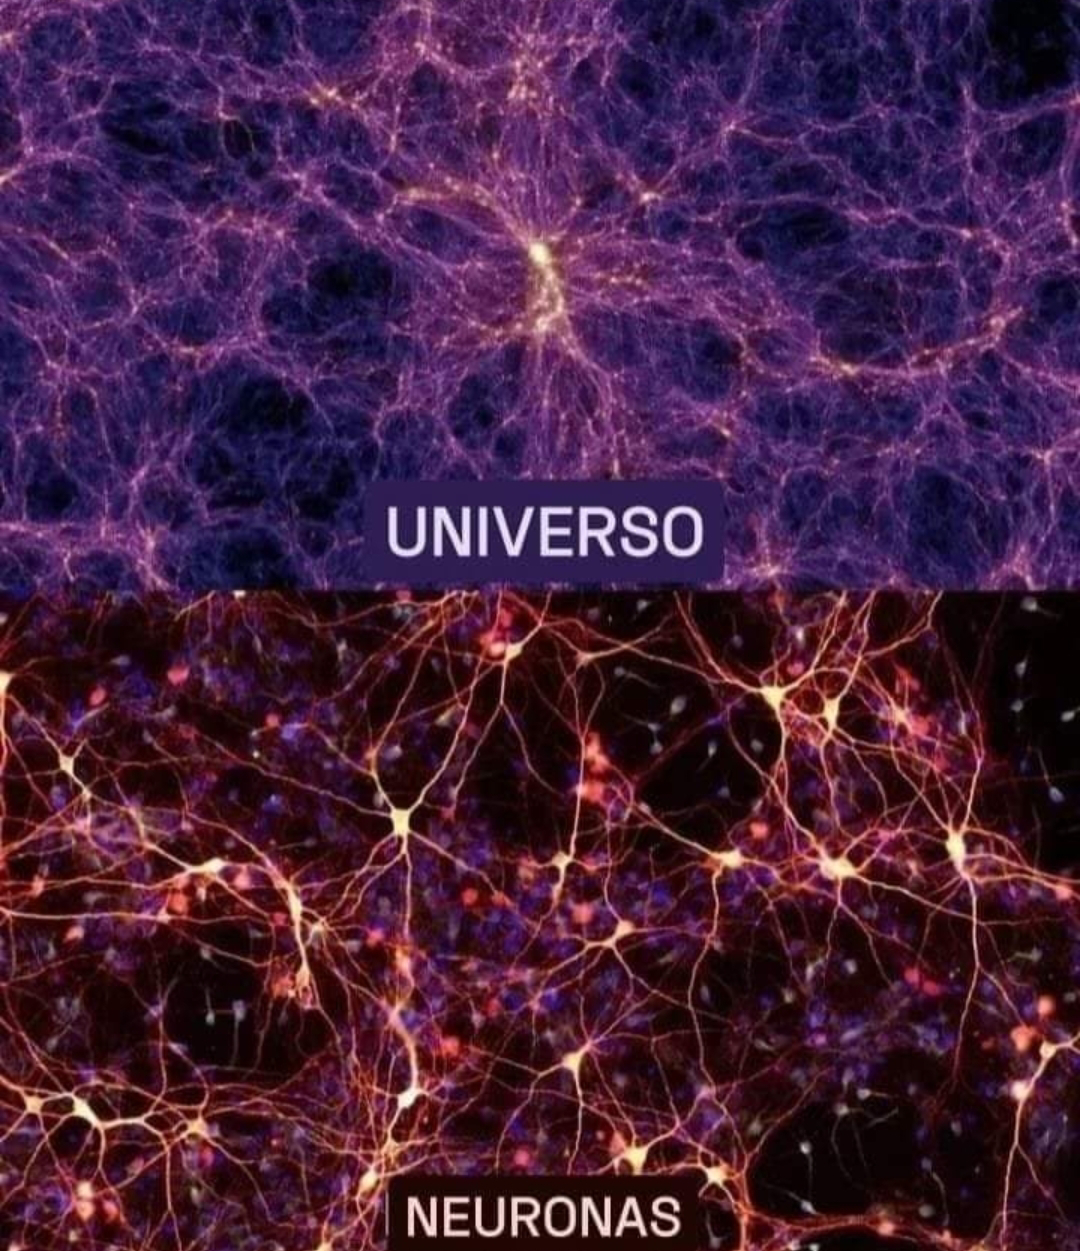 ¿Y sí el Universo es un Cerebro Gigante?El cosmos y sus galaxias y el cerebro y sus células neuronales.Si bien la escala es claramente diferente, la estructura es notablemente similar. En algunos casos, los dos sistemas parecen más similares entre sí que a las partes que los componen.Por ejemplo, el cerebro humano funciona gracias a la red de casi 70 mil millones de neuronas que lo forman. Se cree que el universo tiene al menos 100 mil millones de galaxias.